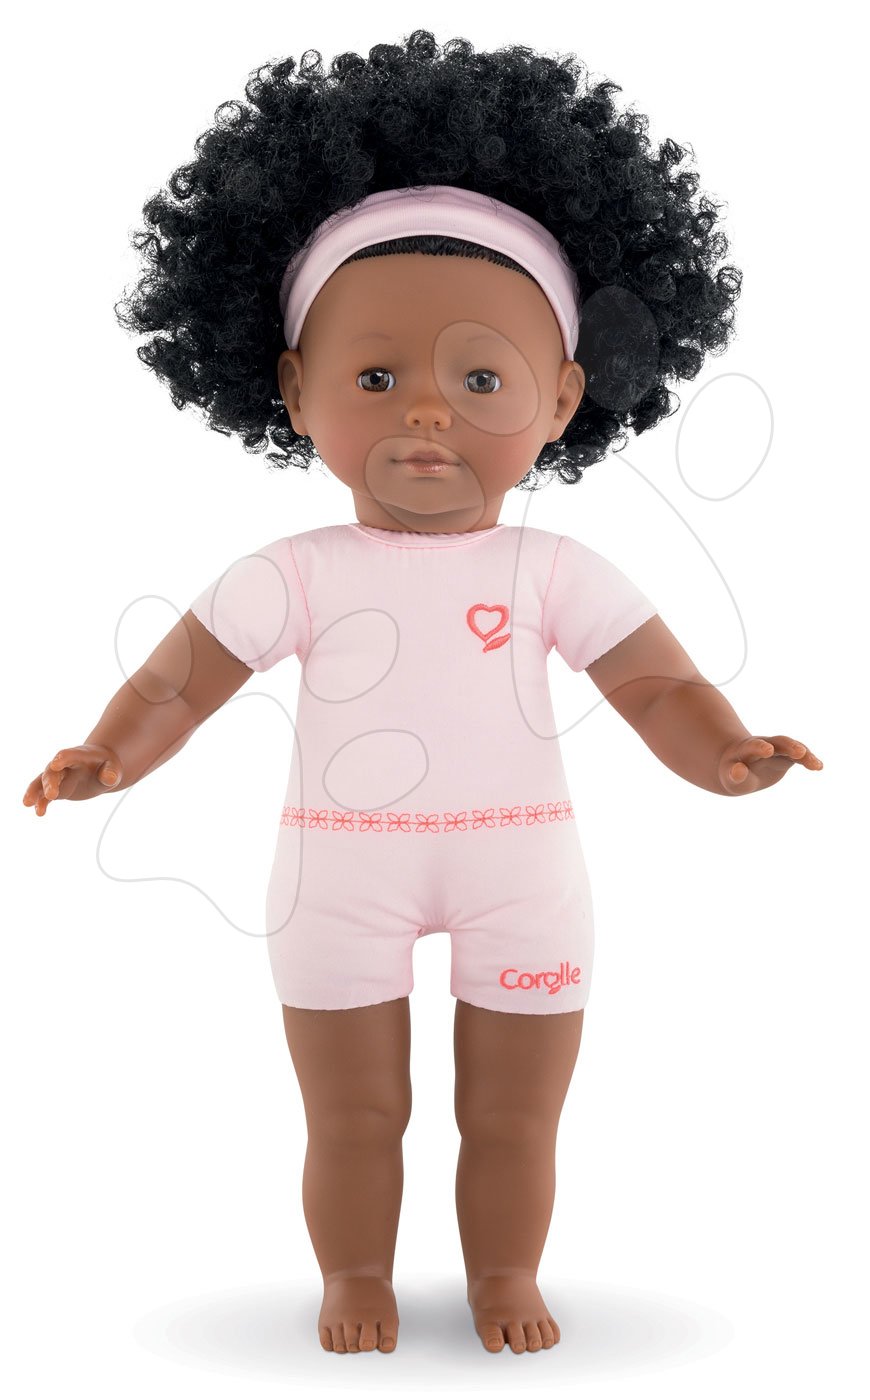 Bábika na obliekanie Pauline Ma Corolle kučeravé čierne vlasy a hnedé klipkajúce oči 36 cm od 4 rokov